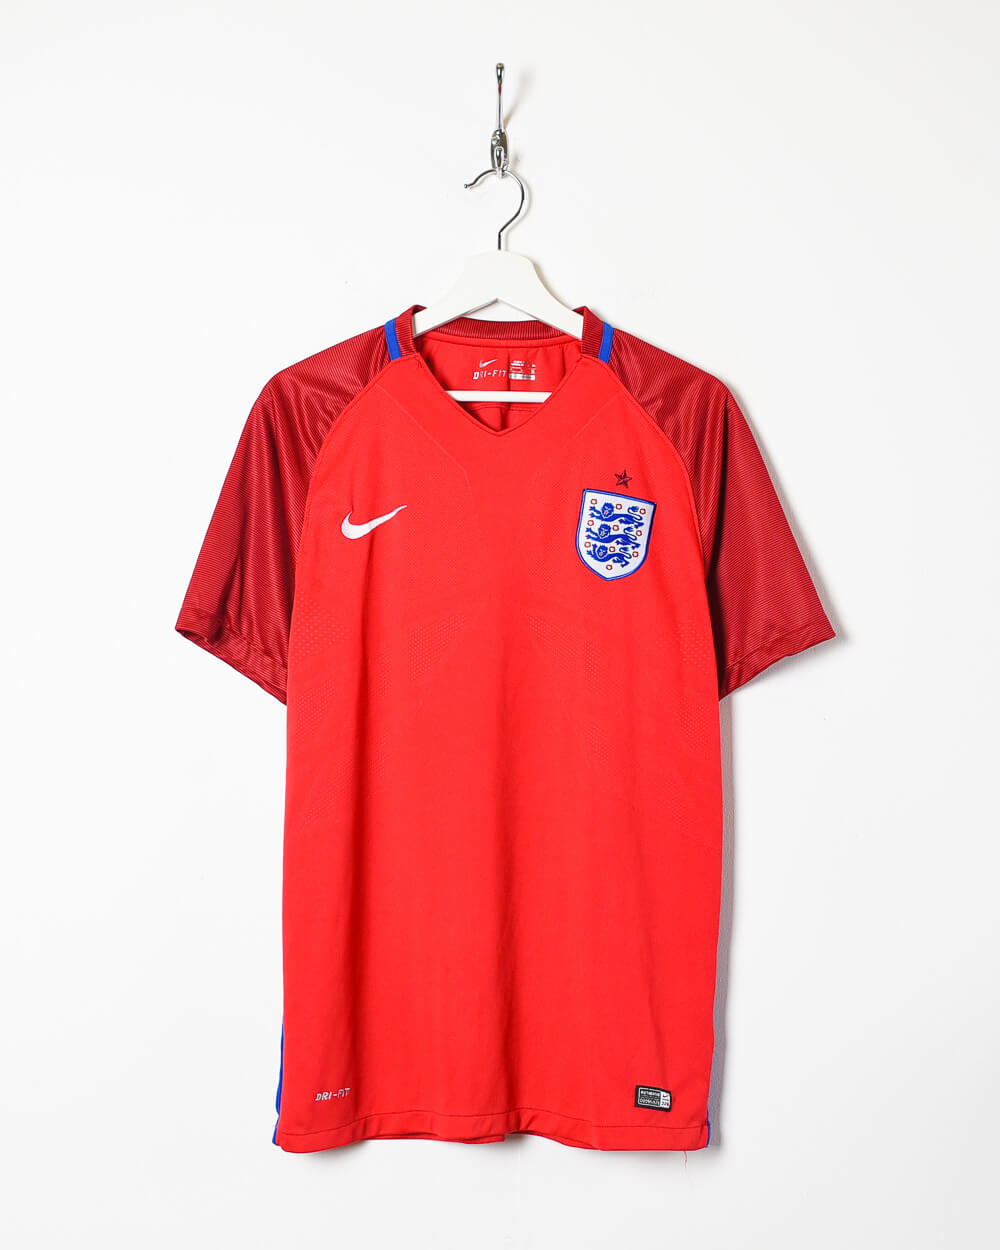 Red Nike 2016 England Away Shirt - Large